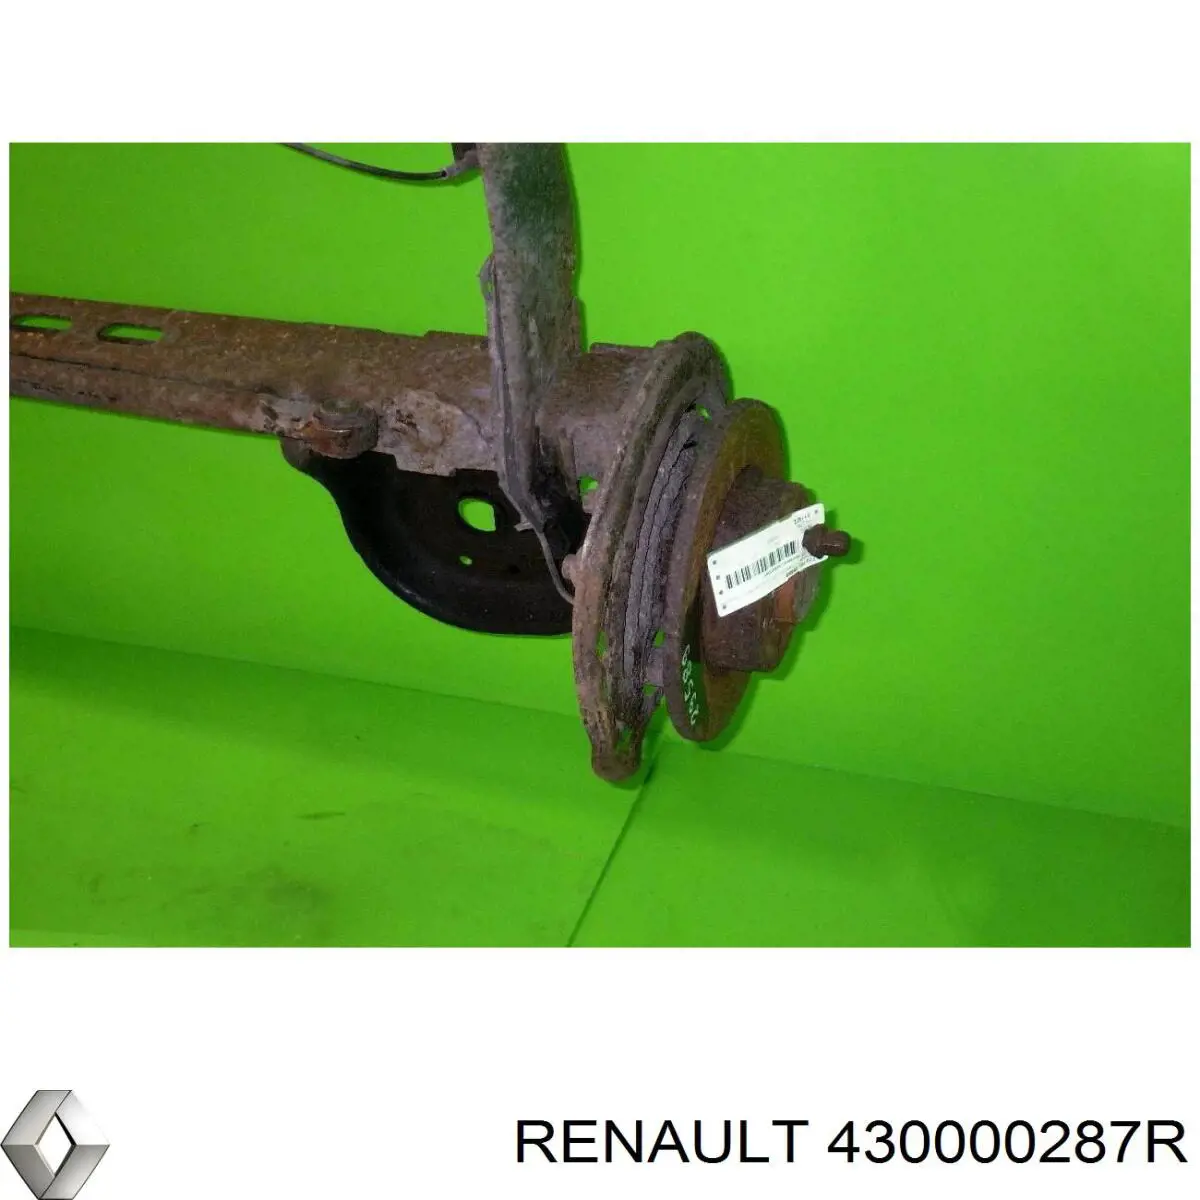 8200485802 Renault (RVI) viga de suspensão traseira (plataforma veicular)